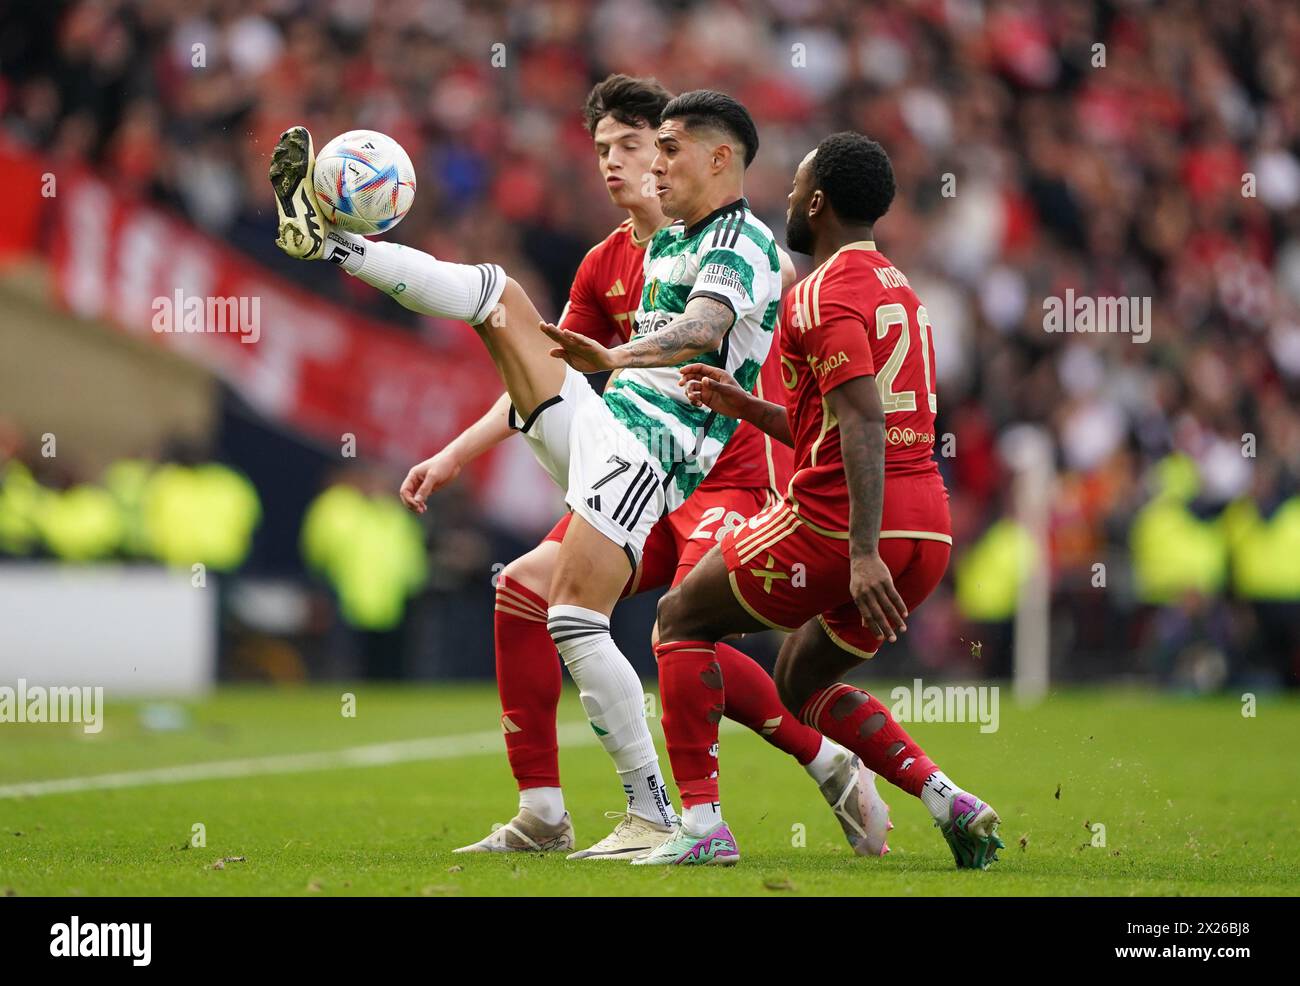 Celtic's Luis Palma (centre) battles with Aberdeen's Jack Milne (left